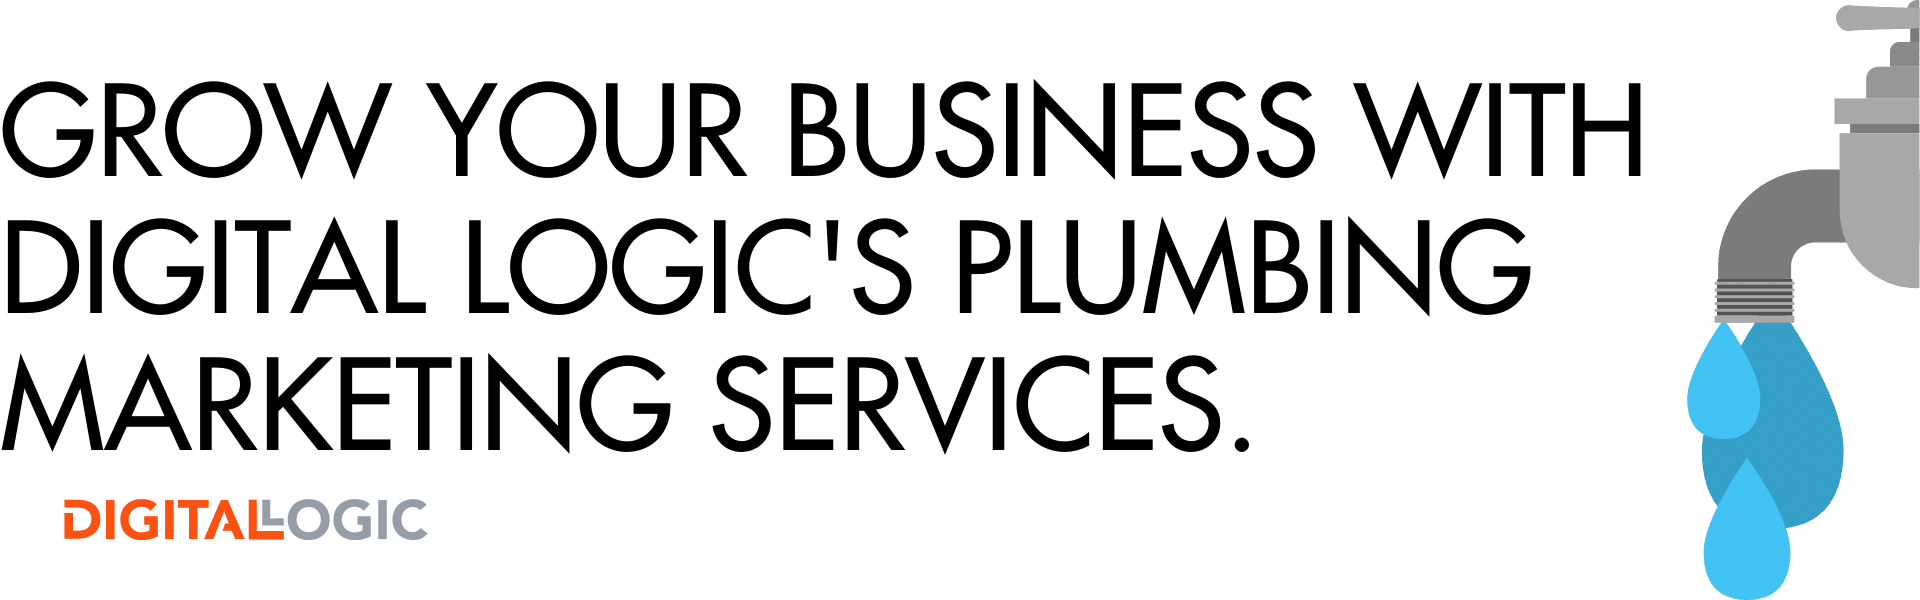 plumbing marketing agency